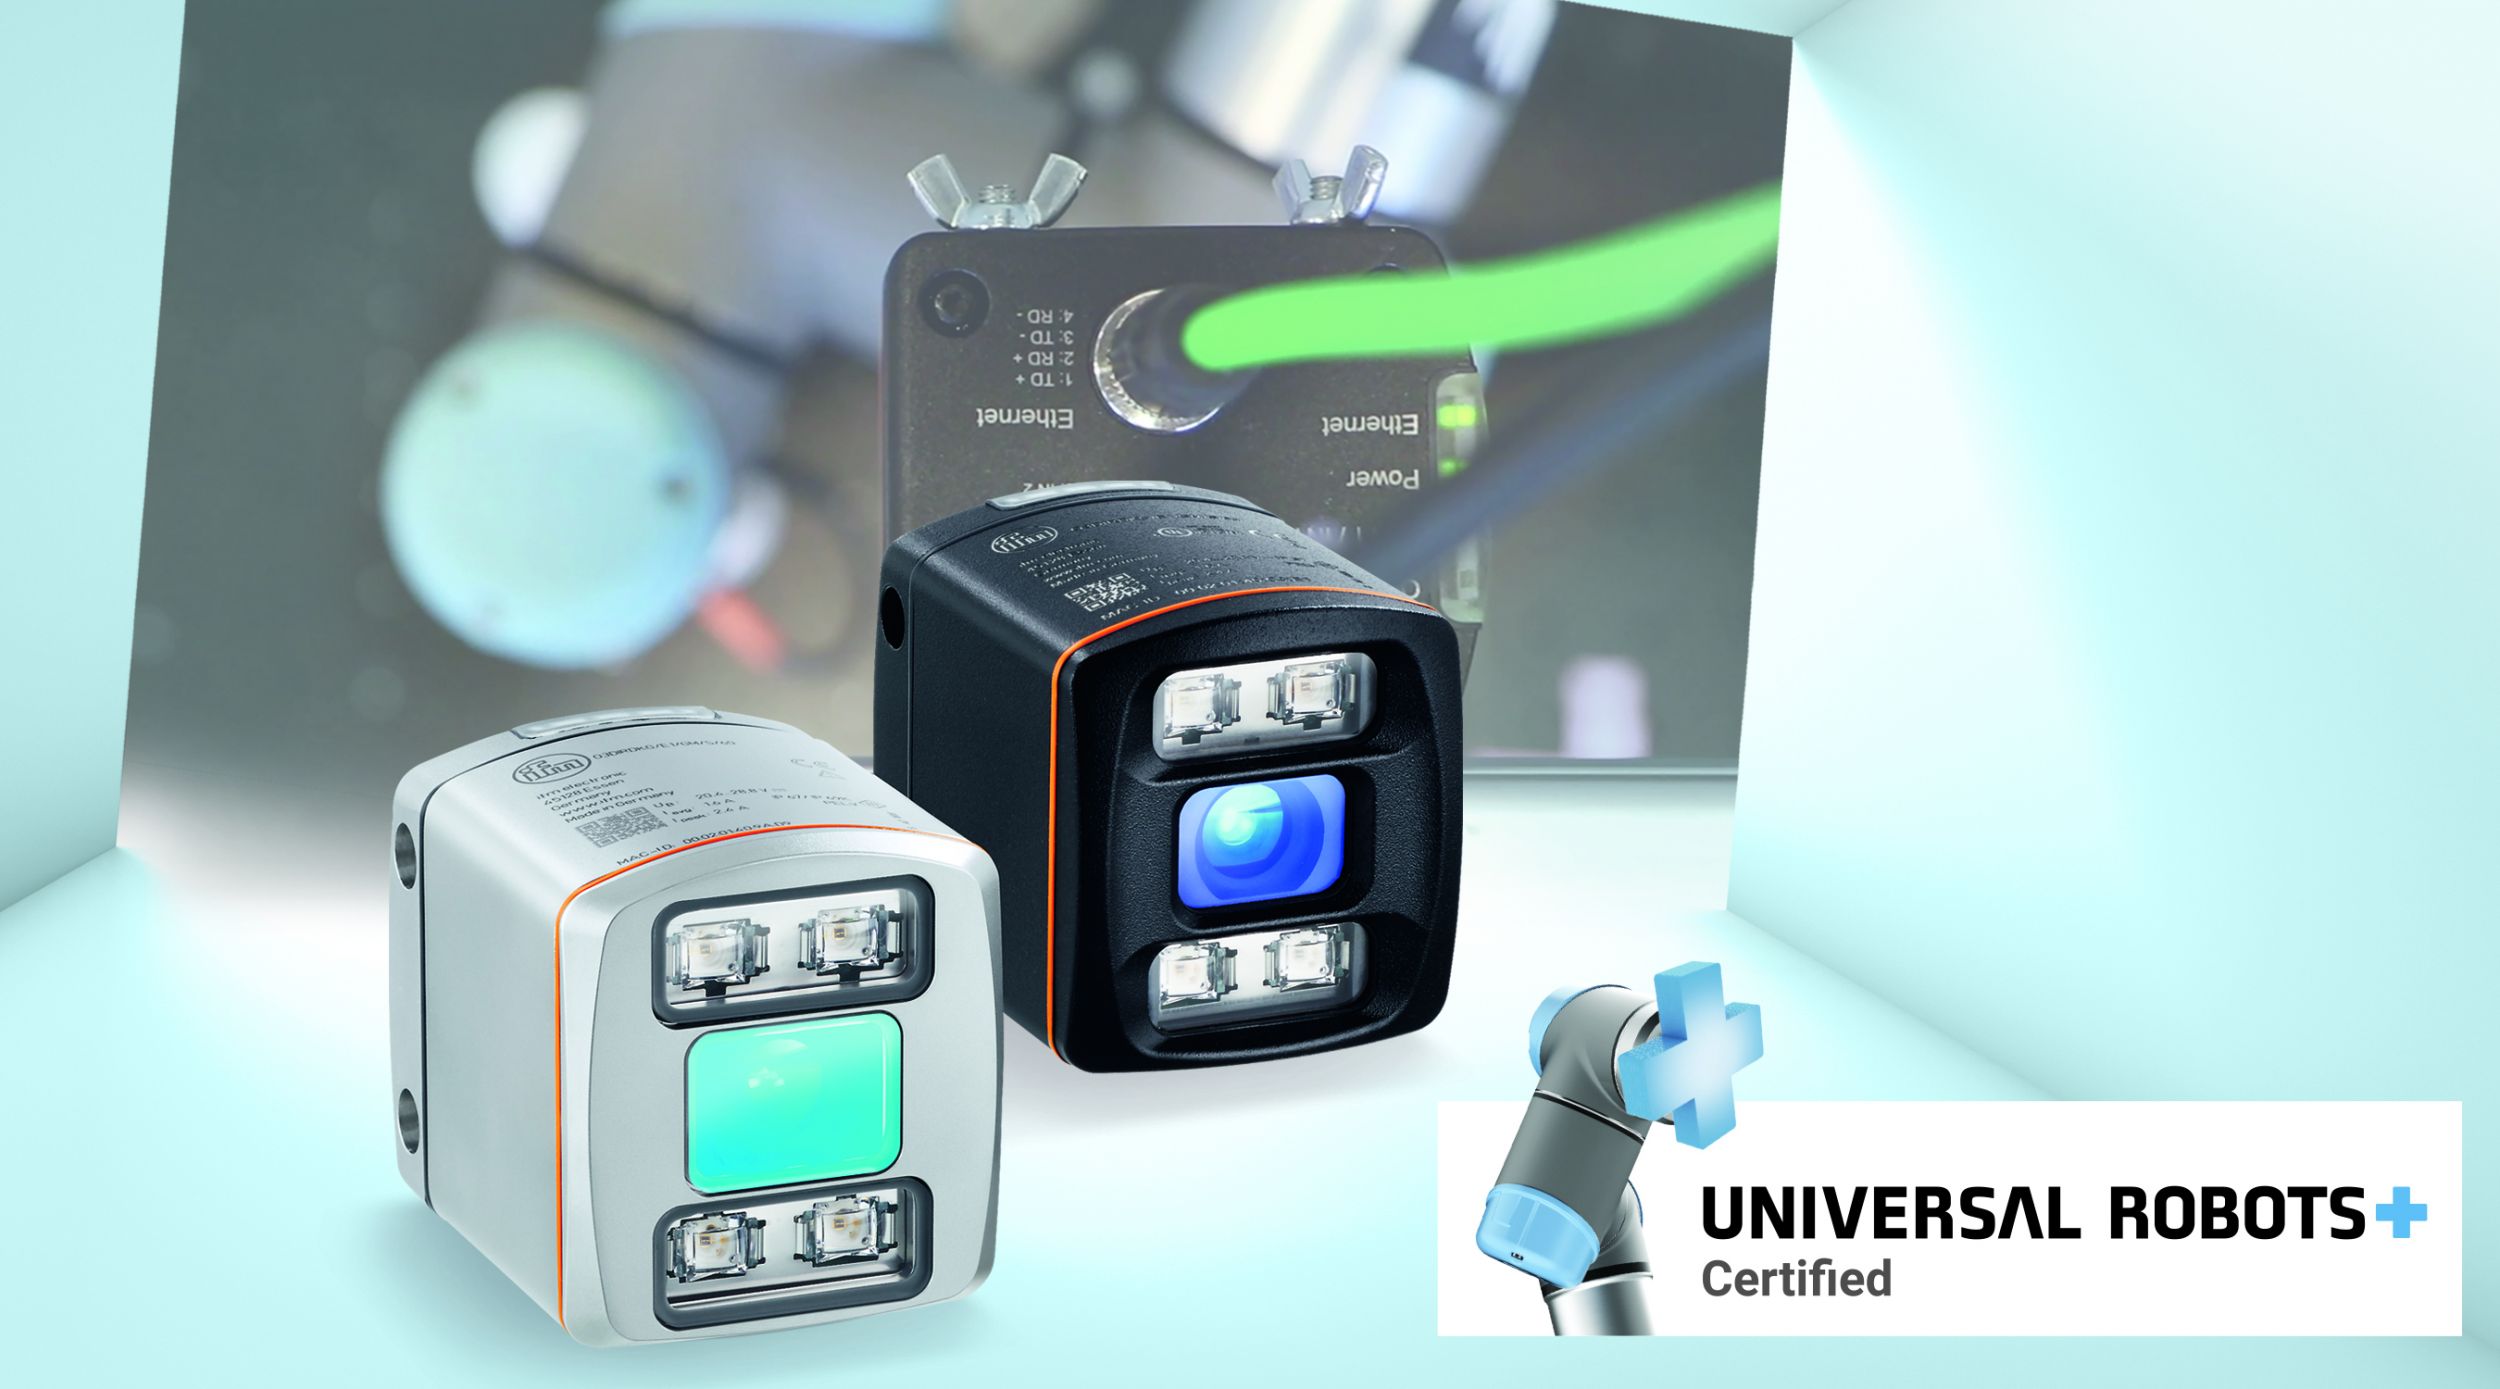 Das Danish Technological Institute (DTI) hat zusammen mit Ifm das Software-Plugin URCap für Universal Robots entwickelt, das die direkte Kommunikation des Vision Sensors O3D mit der Robotersteuerung ermöglicht. (Bild: IFM Electronic GmbH)